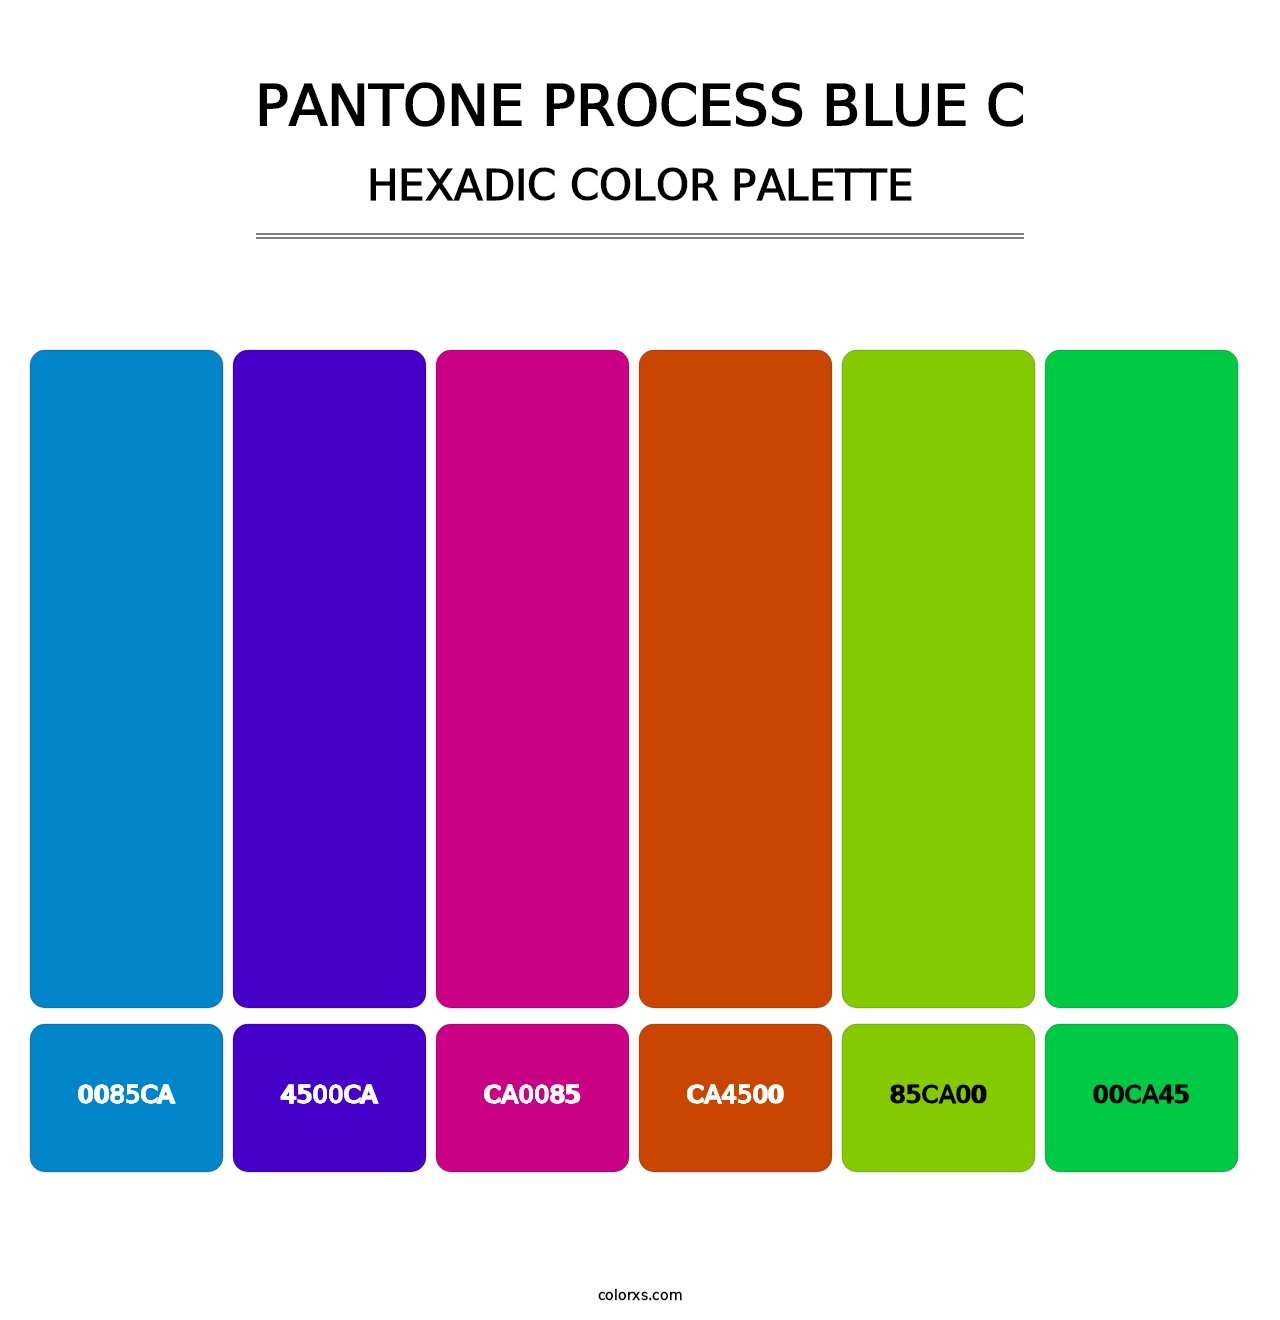 PANTONE Process Blue C - Hexadic Color Palette